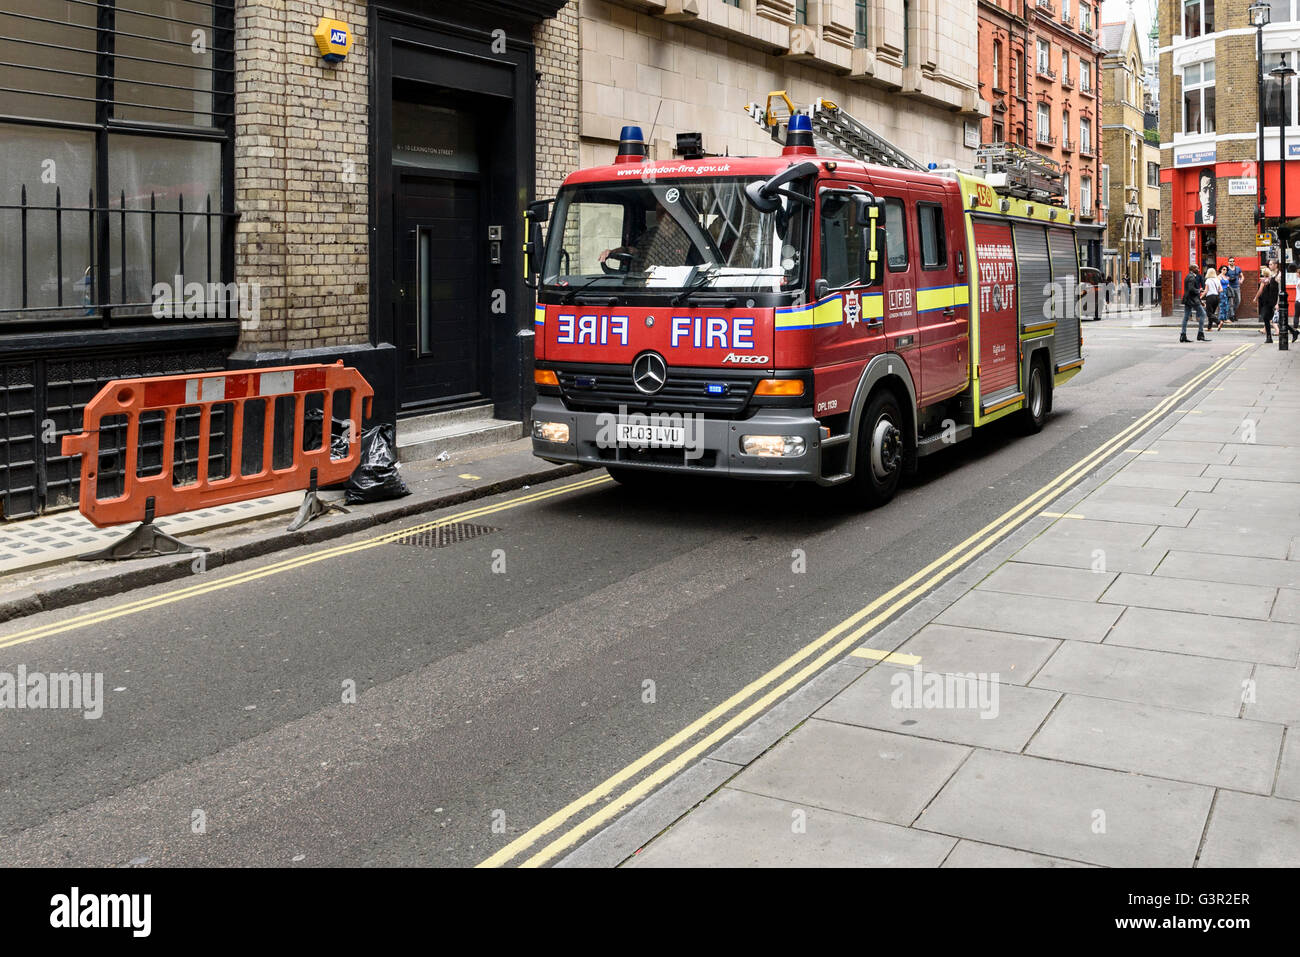 London fire engine on narrow Soho street, UK. Stock Photo